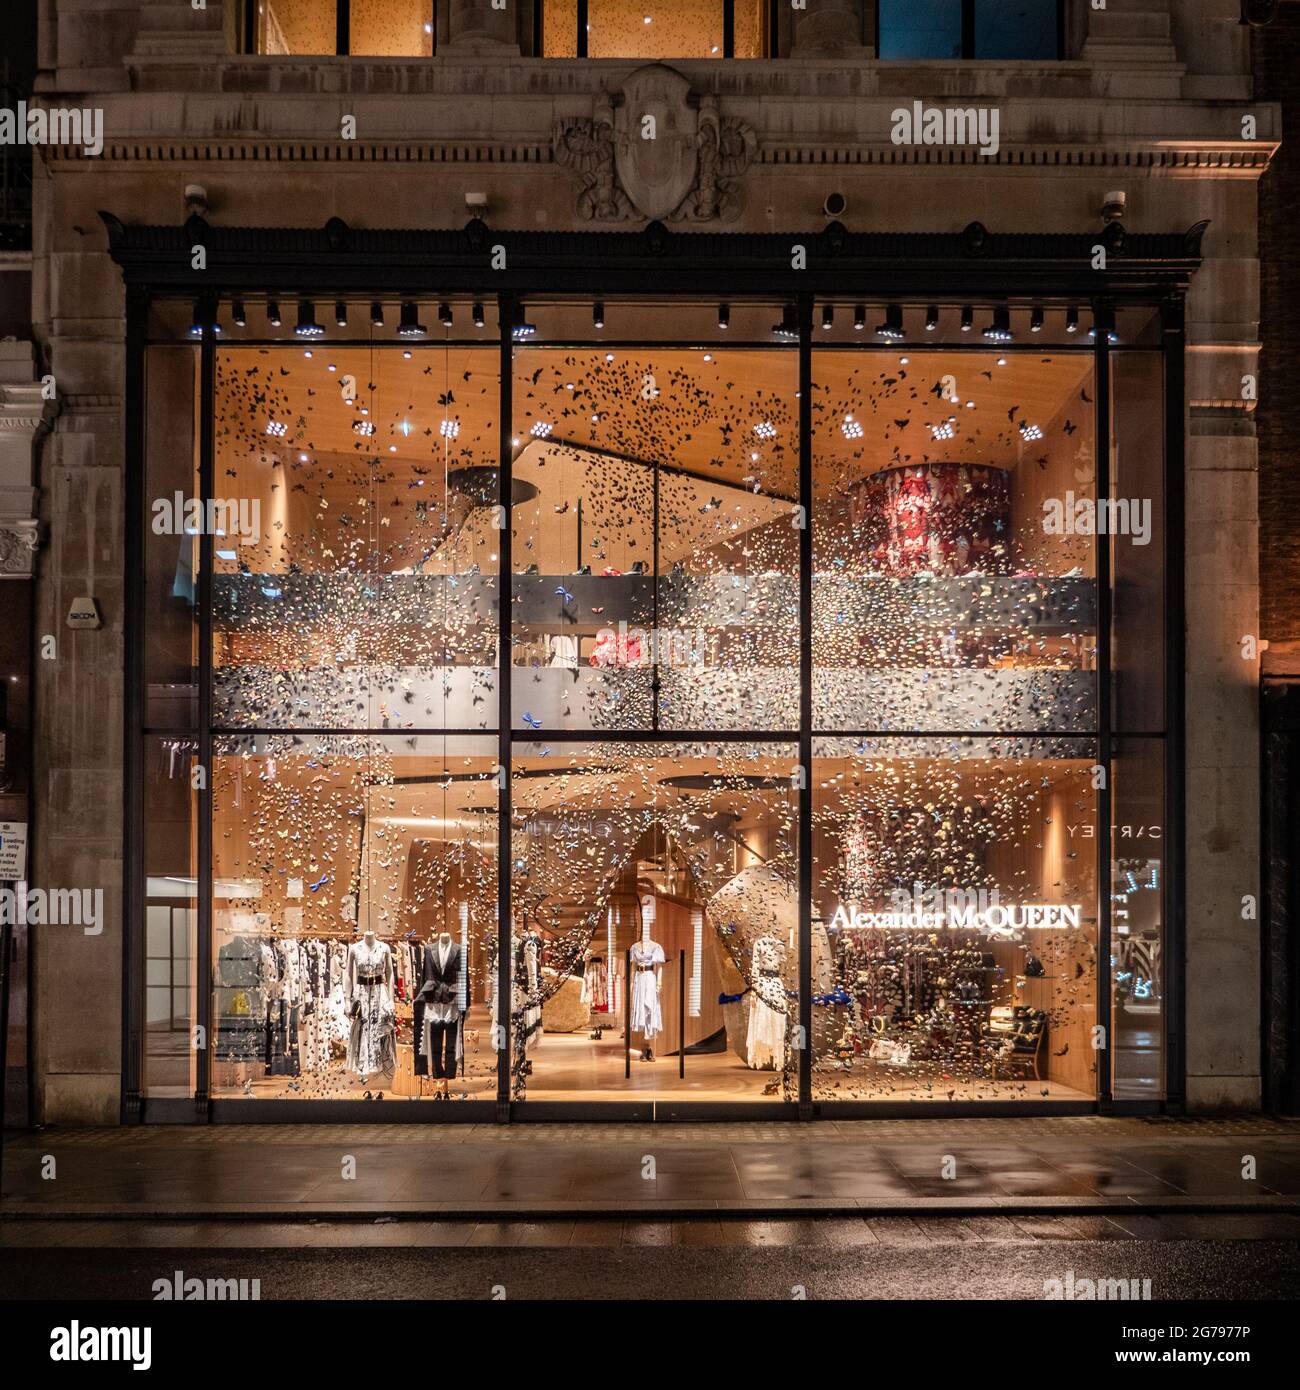 Luxury Shopping Street In Paris Stock Photo - Download Image Now - Alexander  McQueen - Designer Label, Alexander McQueen - Fashion Designer,  Architecture - iStock